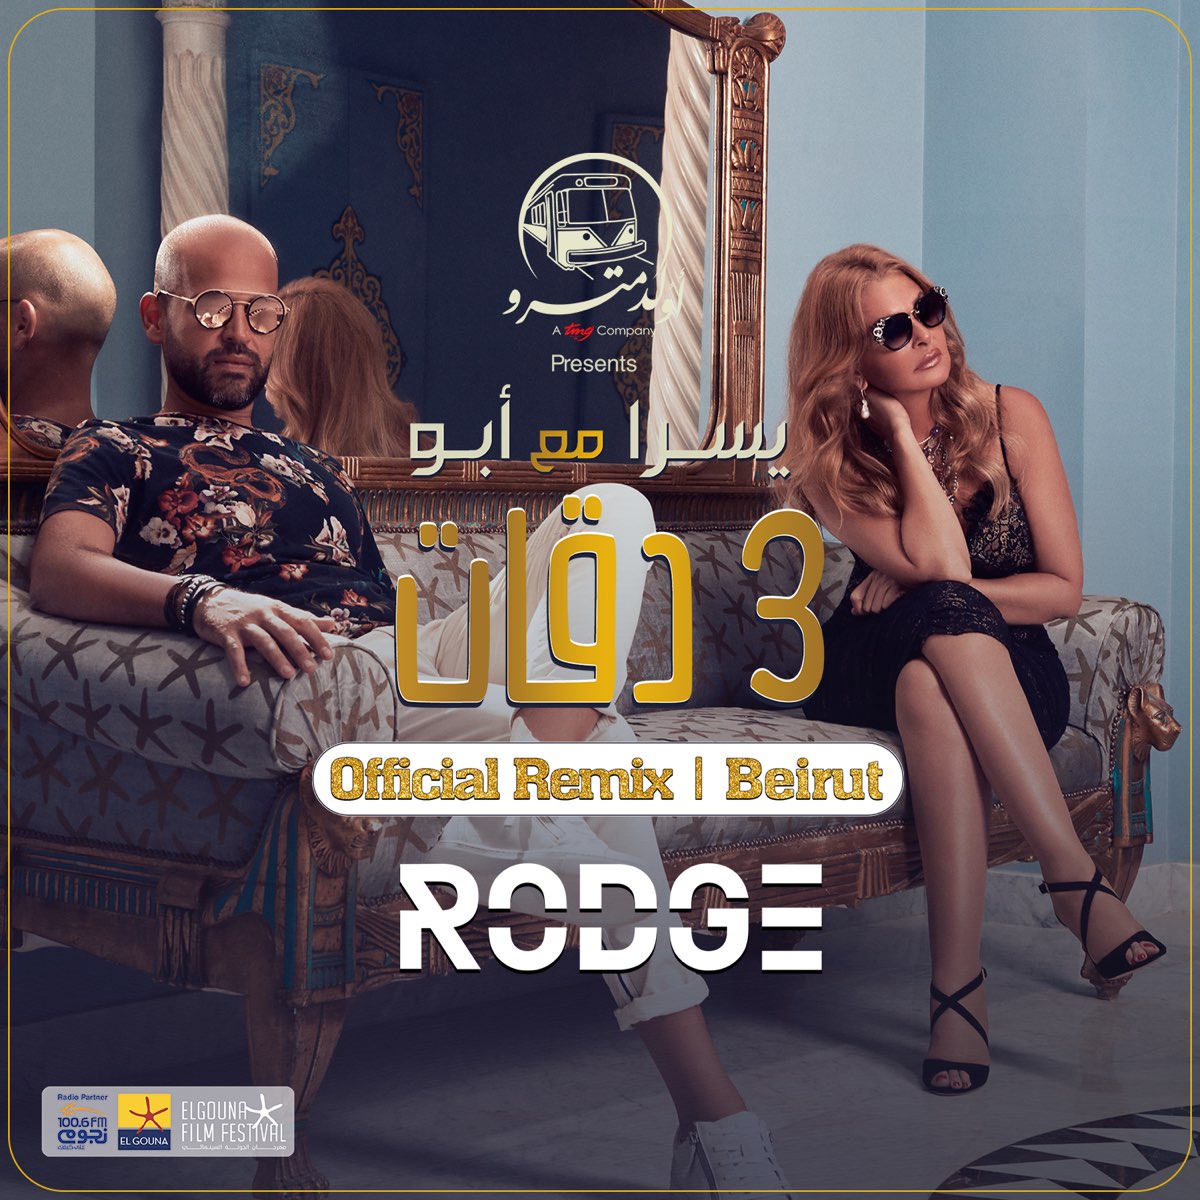 3 Daqat (feat. Yousra) [Rodge Remix] - Single - Album by Abu - Apple Music